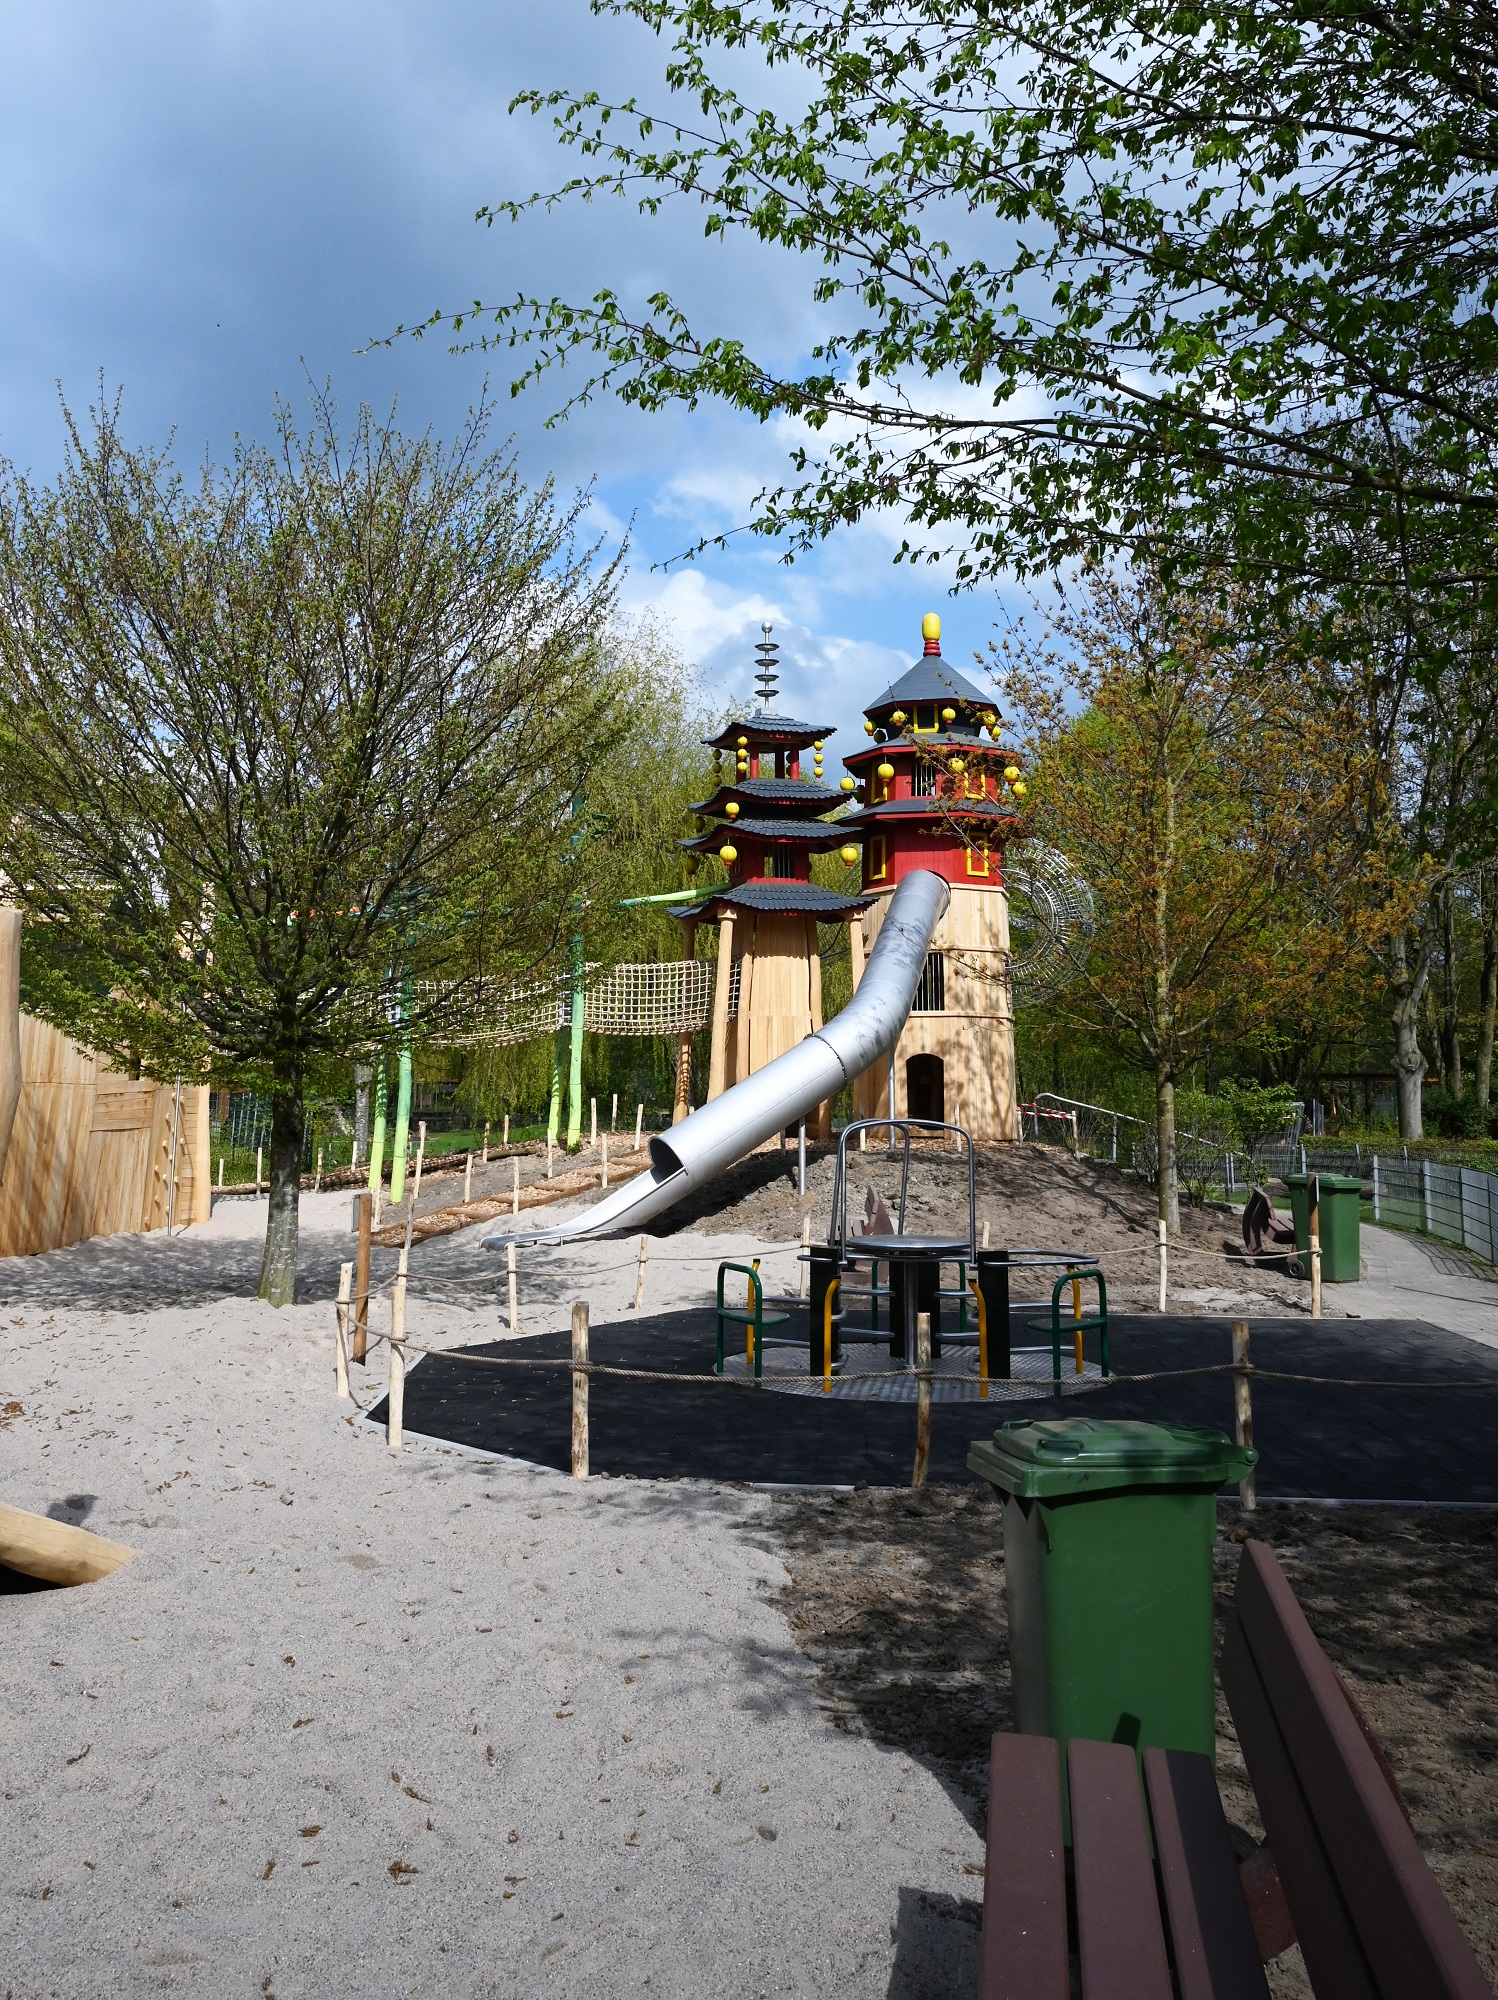 Der Playmore Fantasy-Abenteuerspielplatz im Tiergarten Kleve gilt als einer der schönsten Spielplätze am Niederrhein (5)